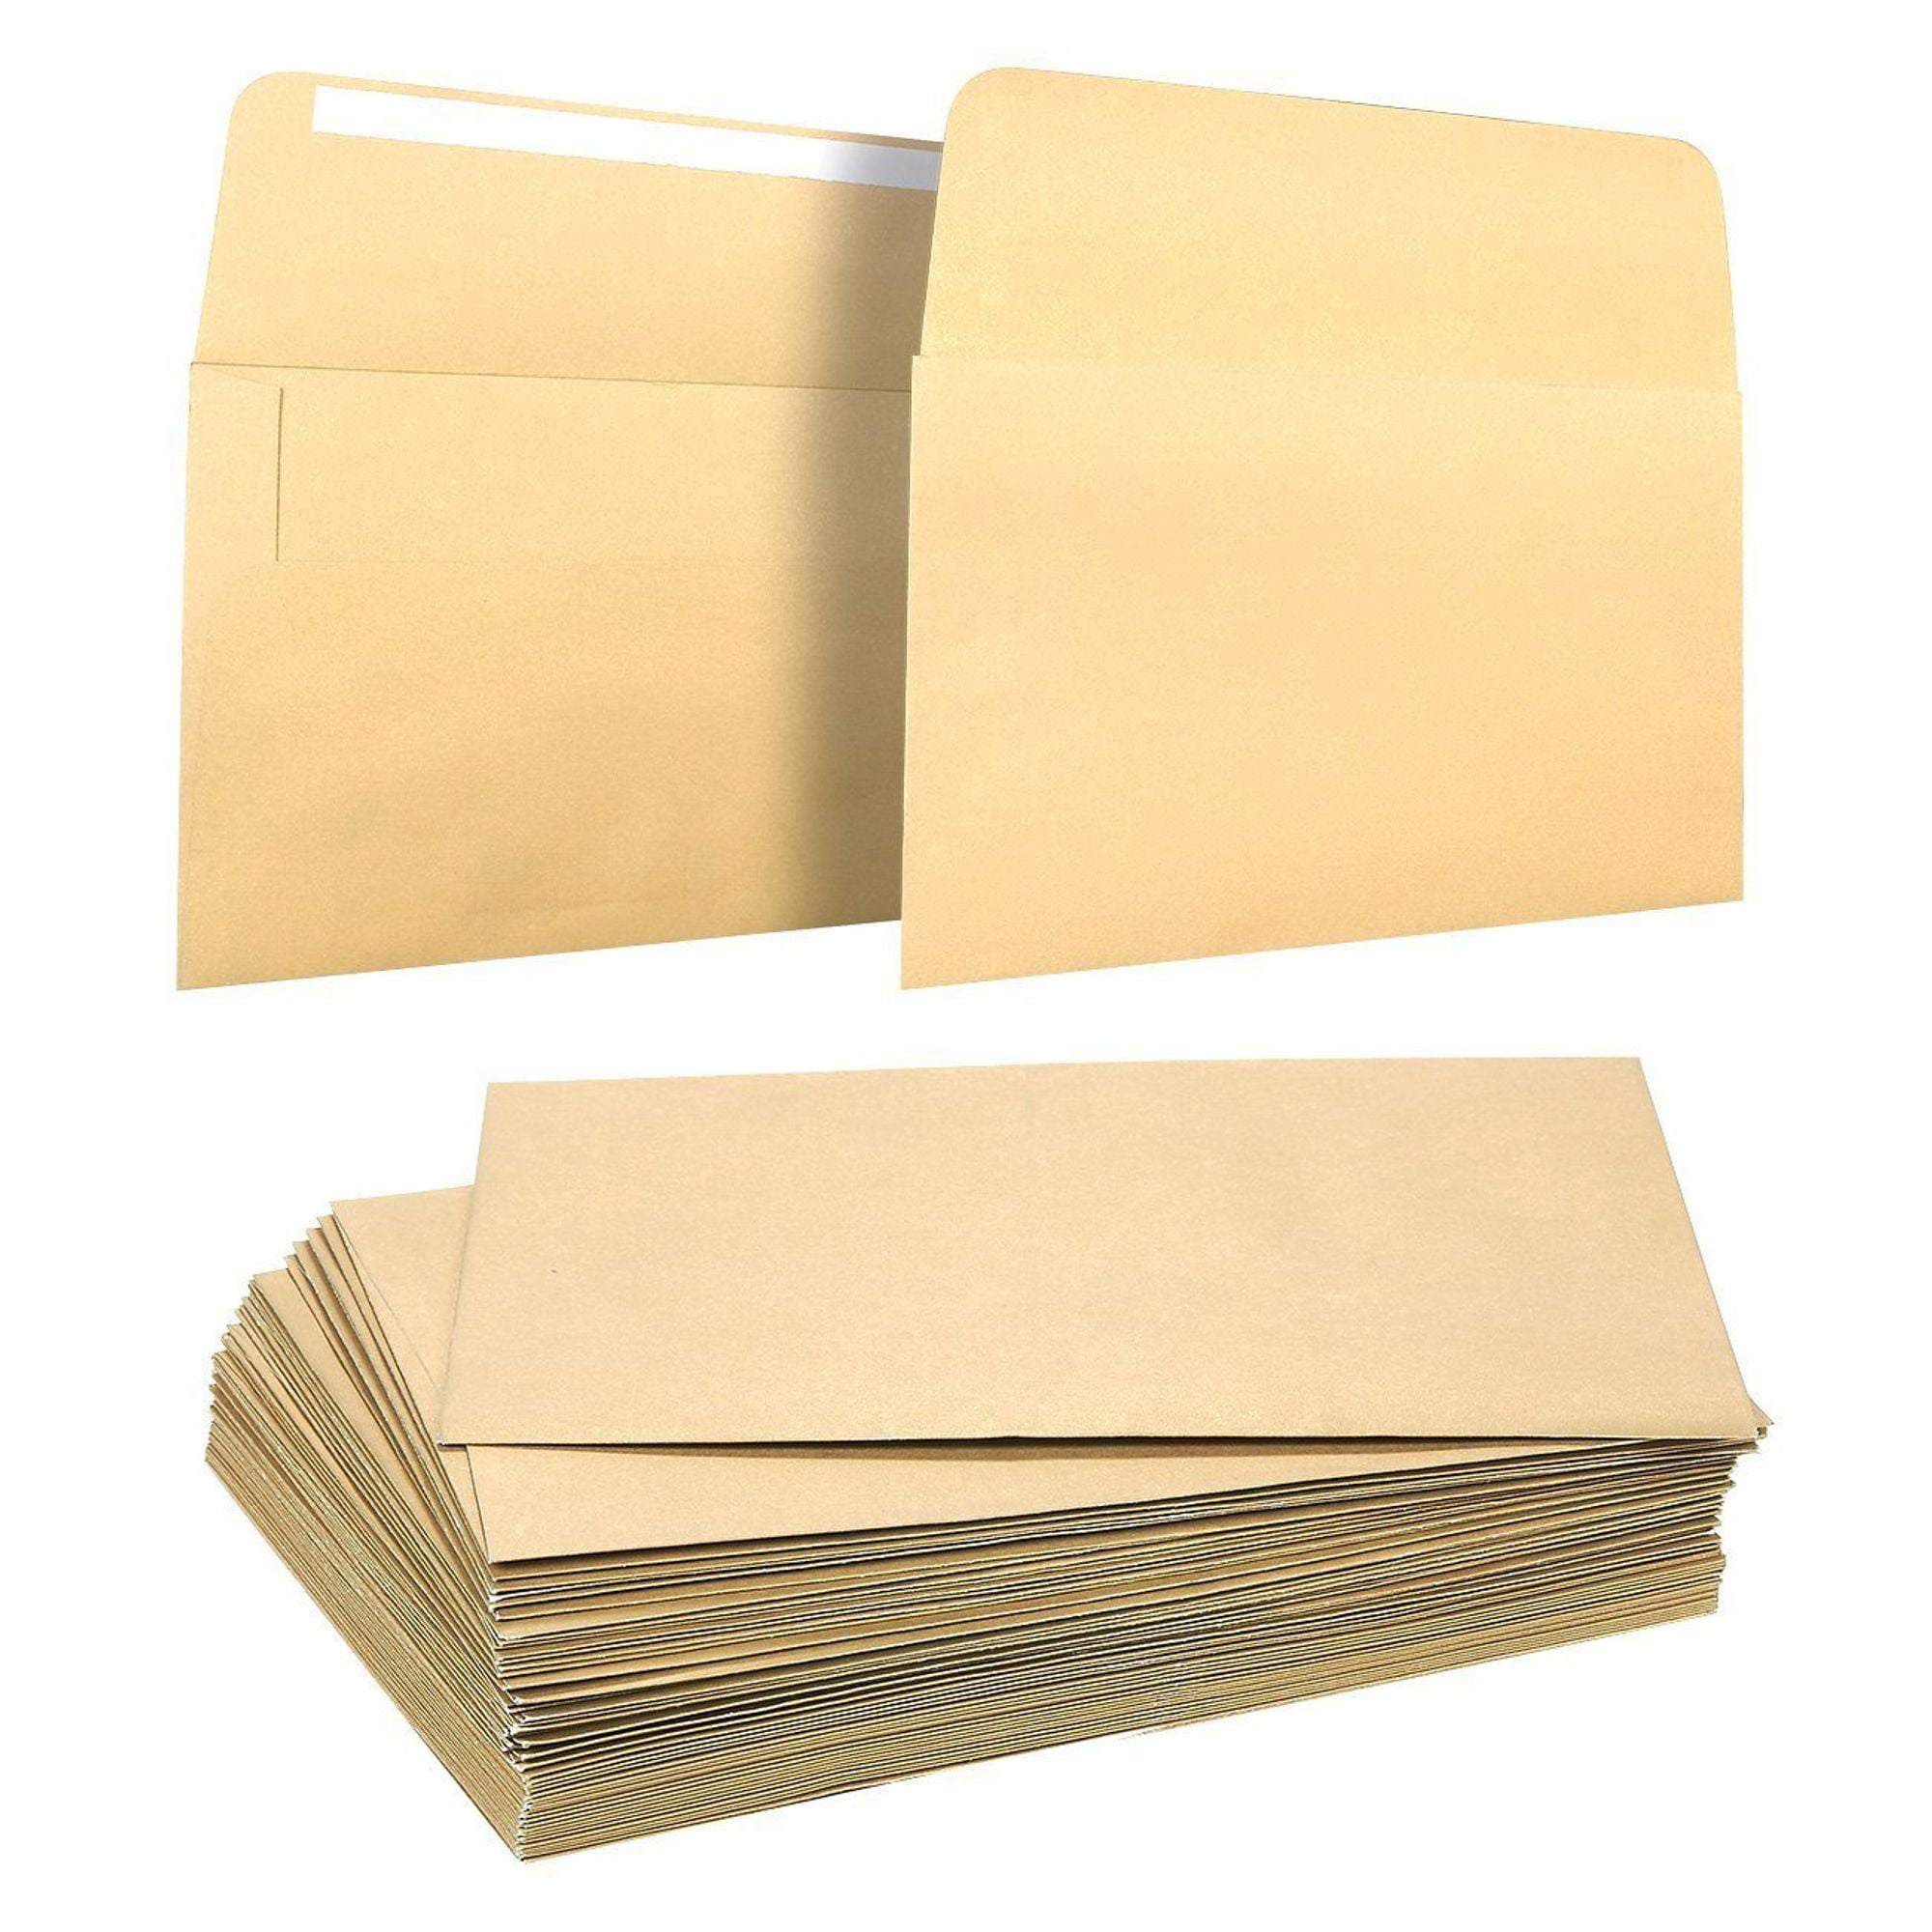 50 Pieces A7 Envelopes - 5.25x7.25 inches Square Flap Envelopes ...